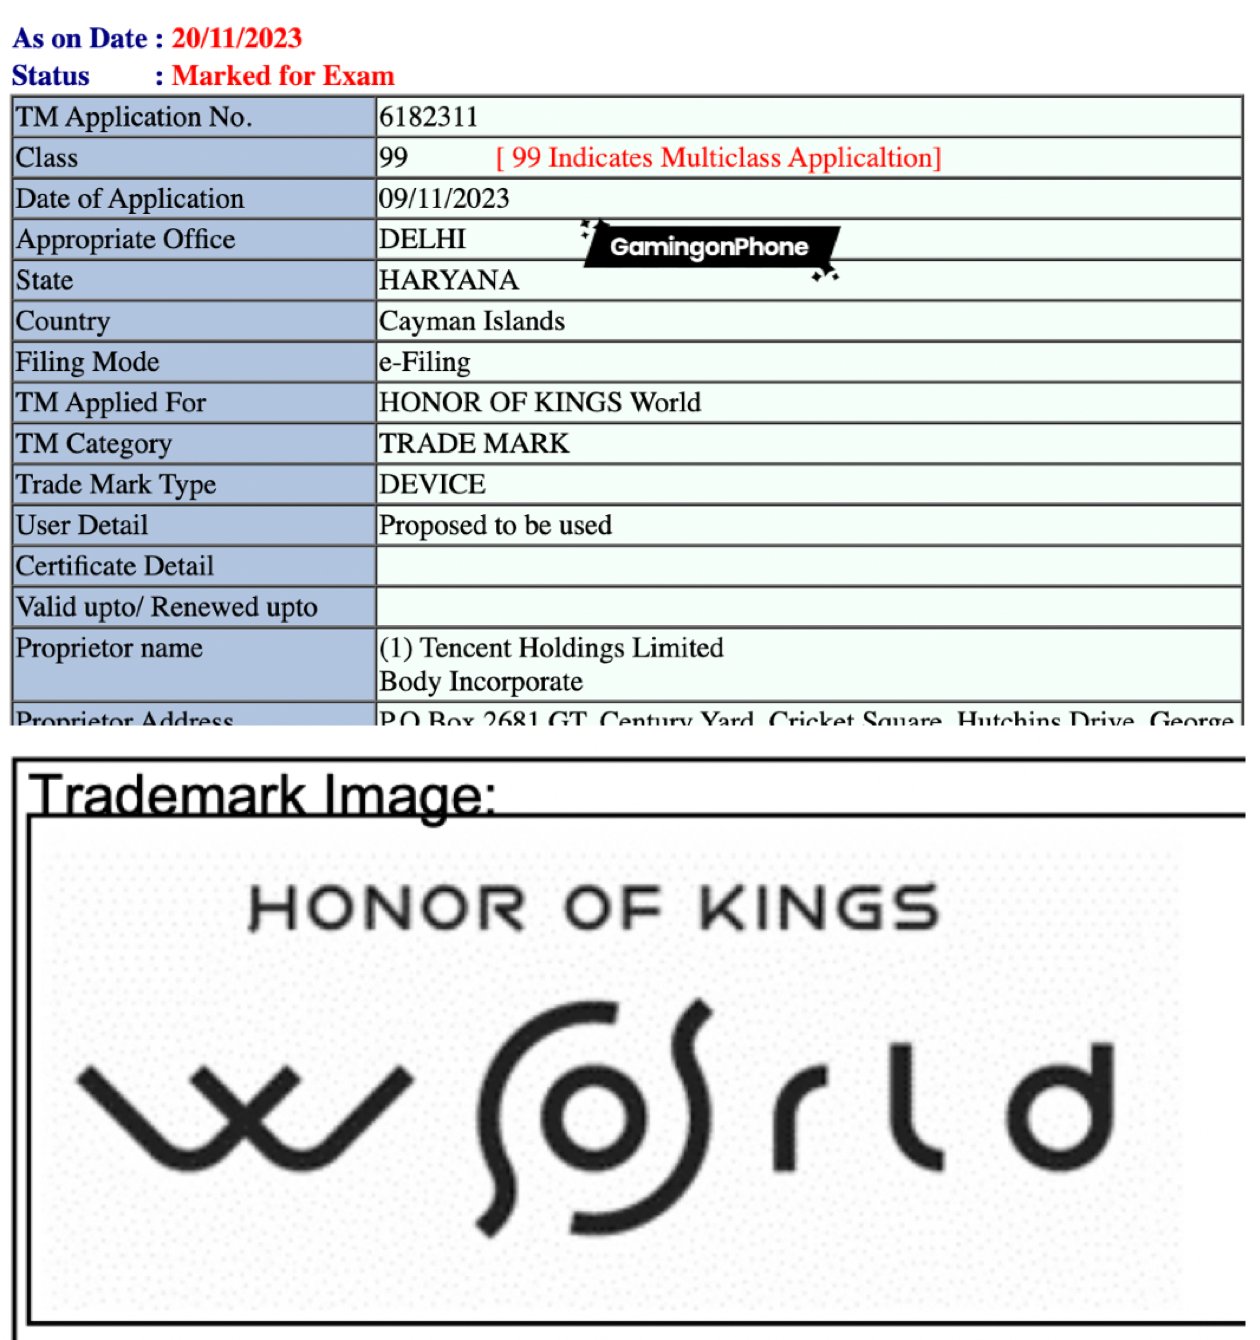 Honor of Kings (HoK) Global News & Updates on X: The global beta